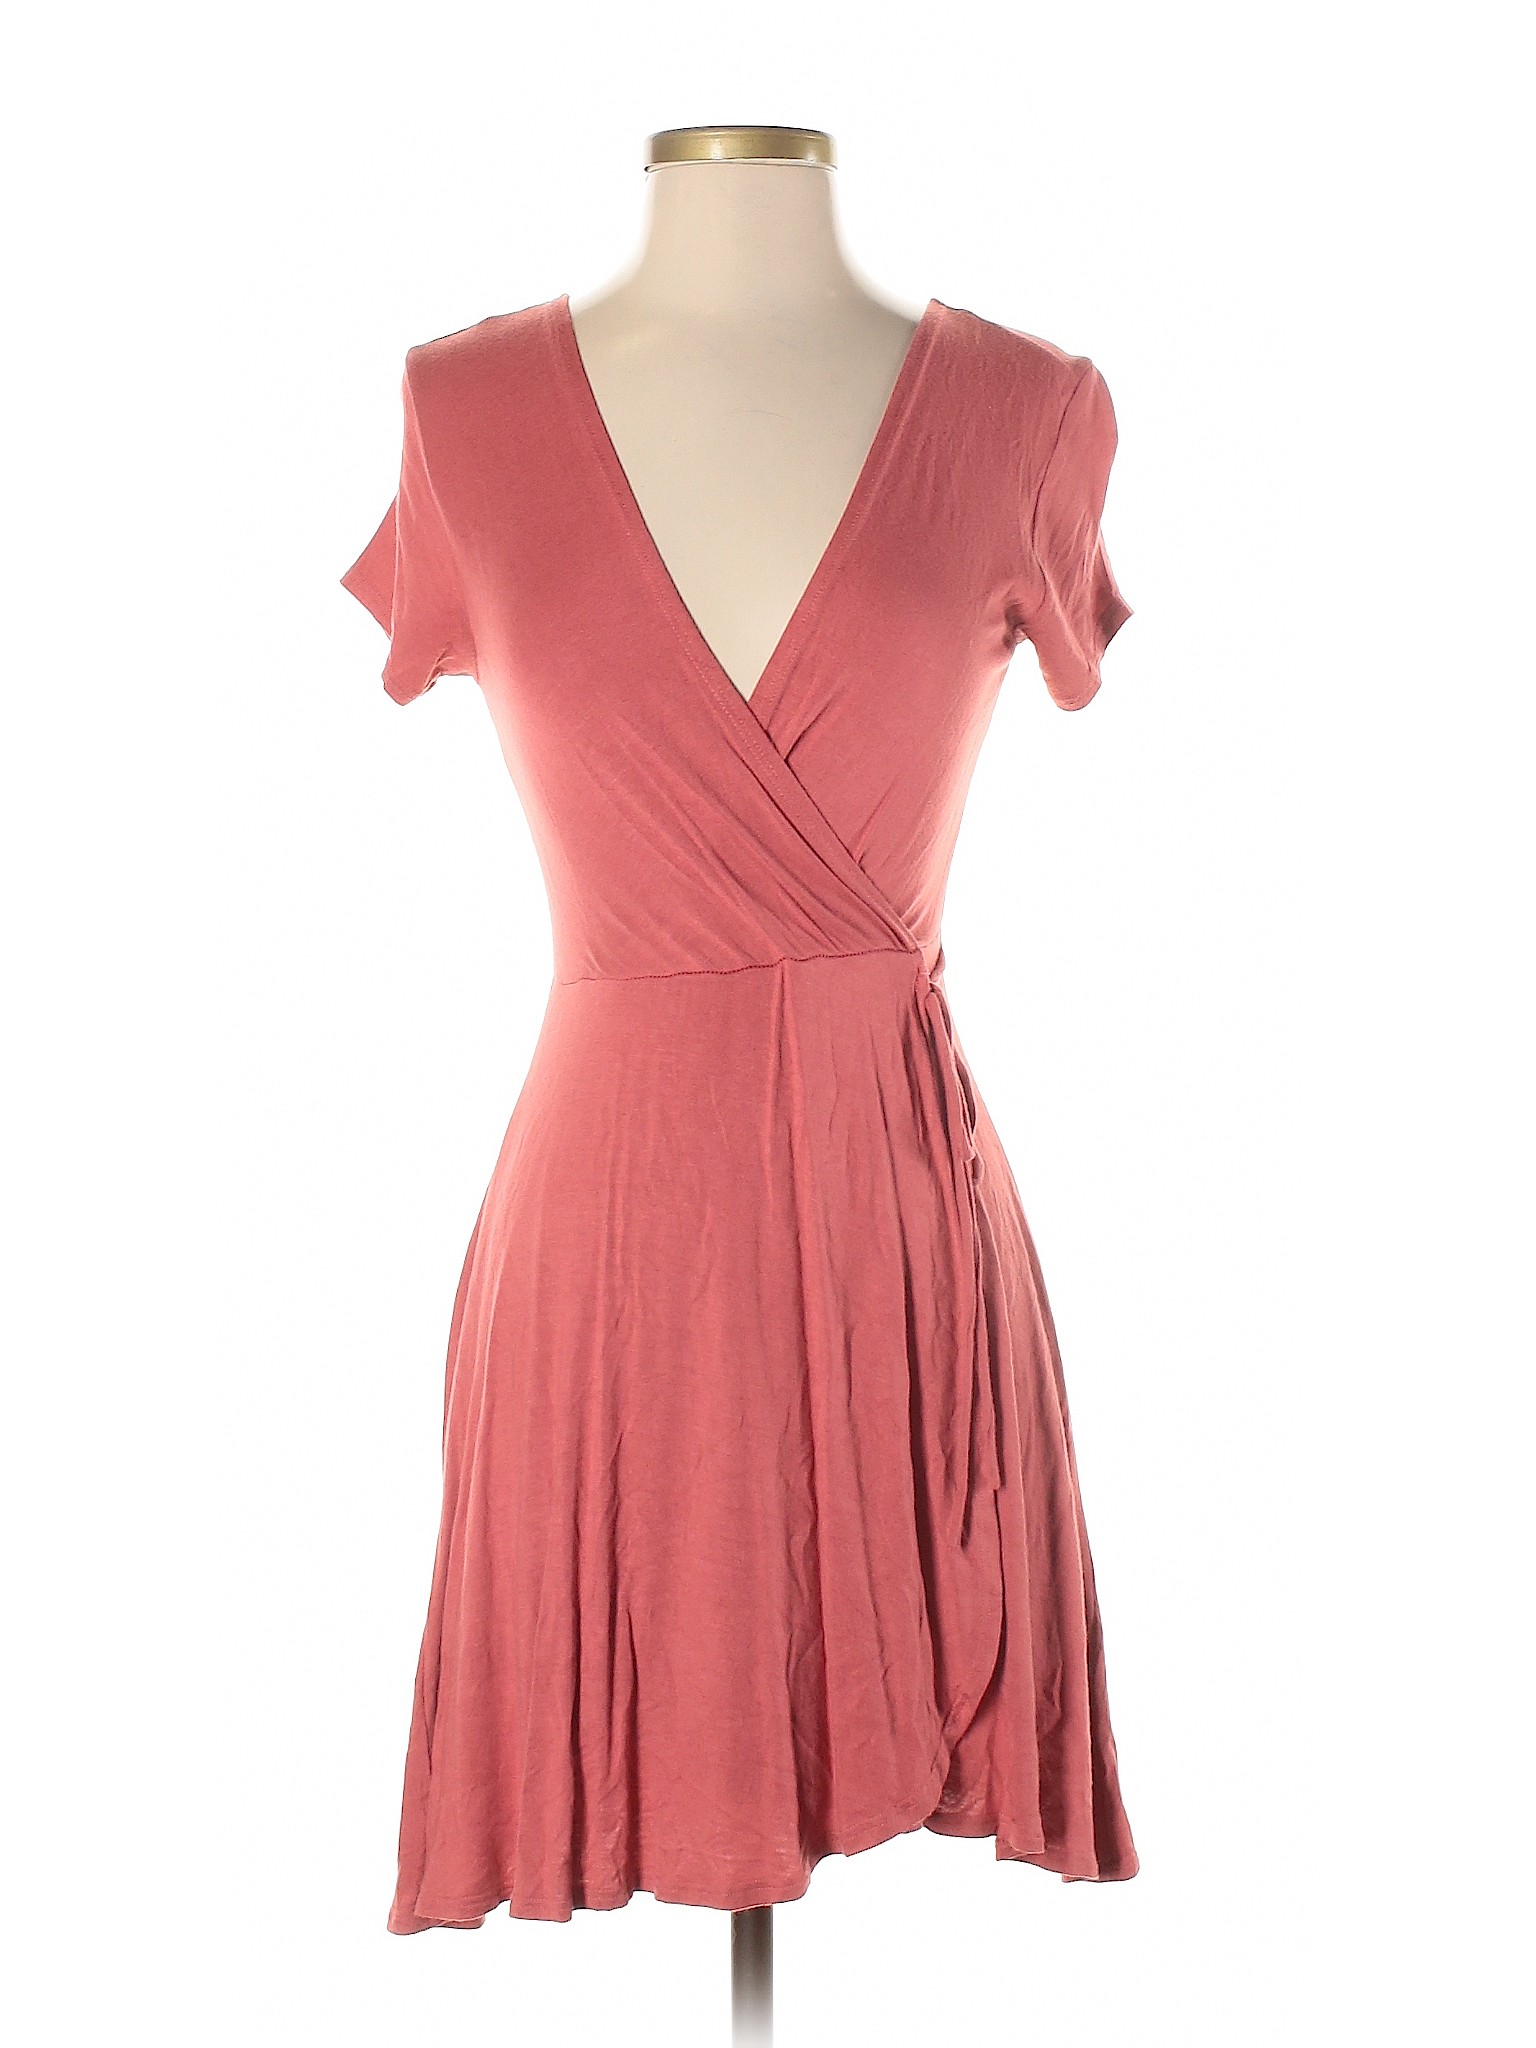 Doublju Women Pink Casual Dress S | eBay